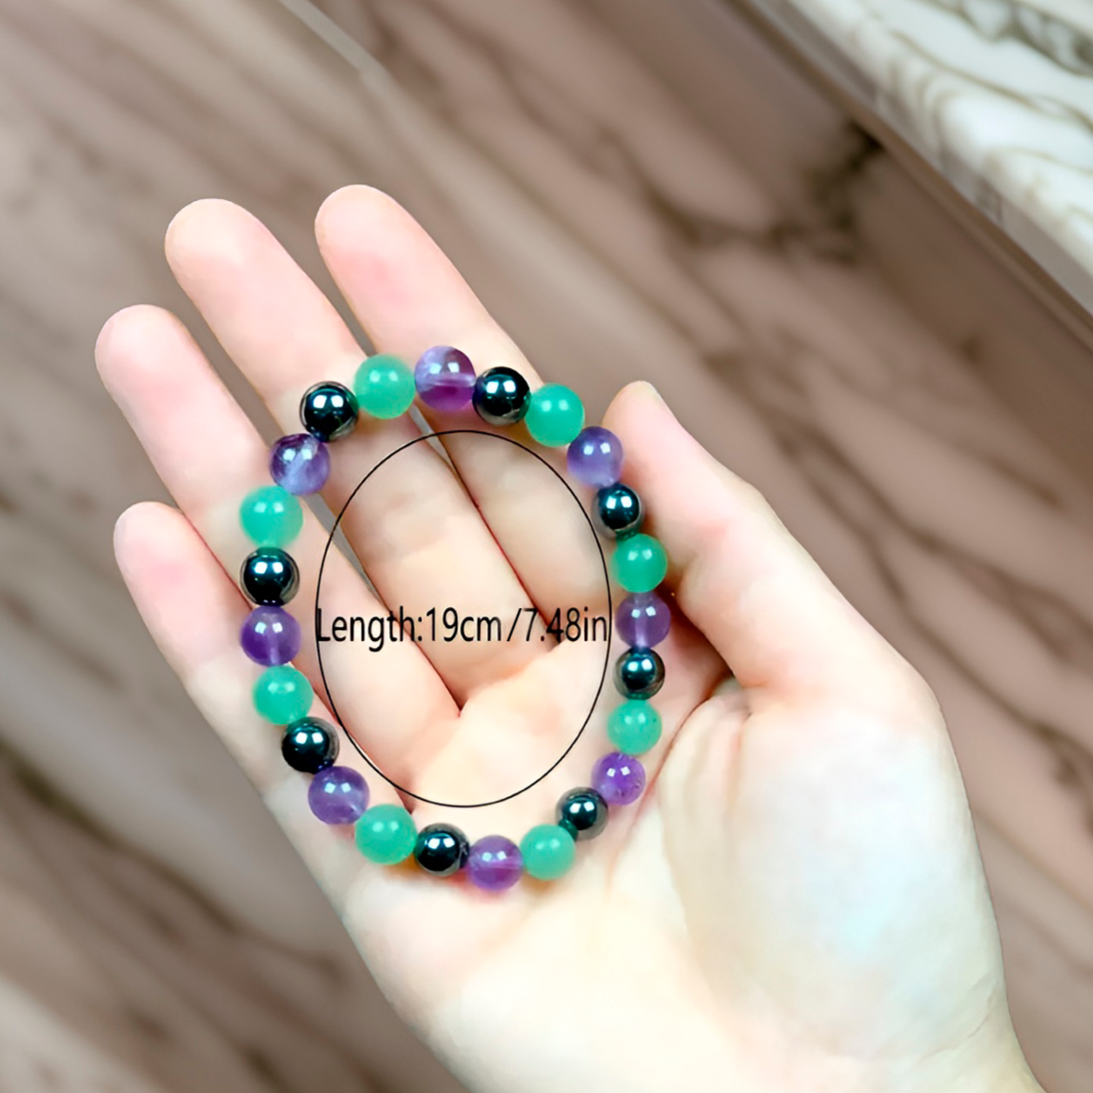 Beads Bracelets (Amethyst + Hematite + Fluorite) (8 mm)